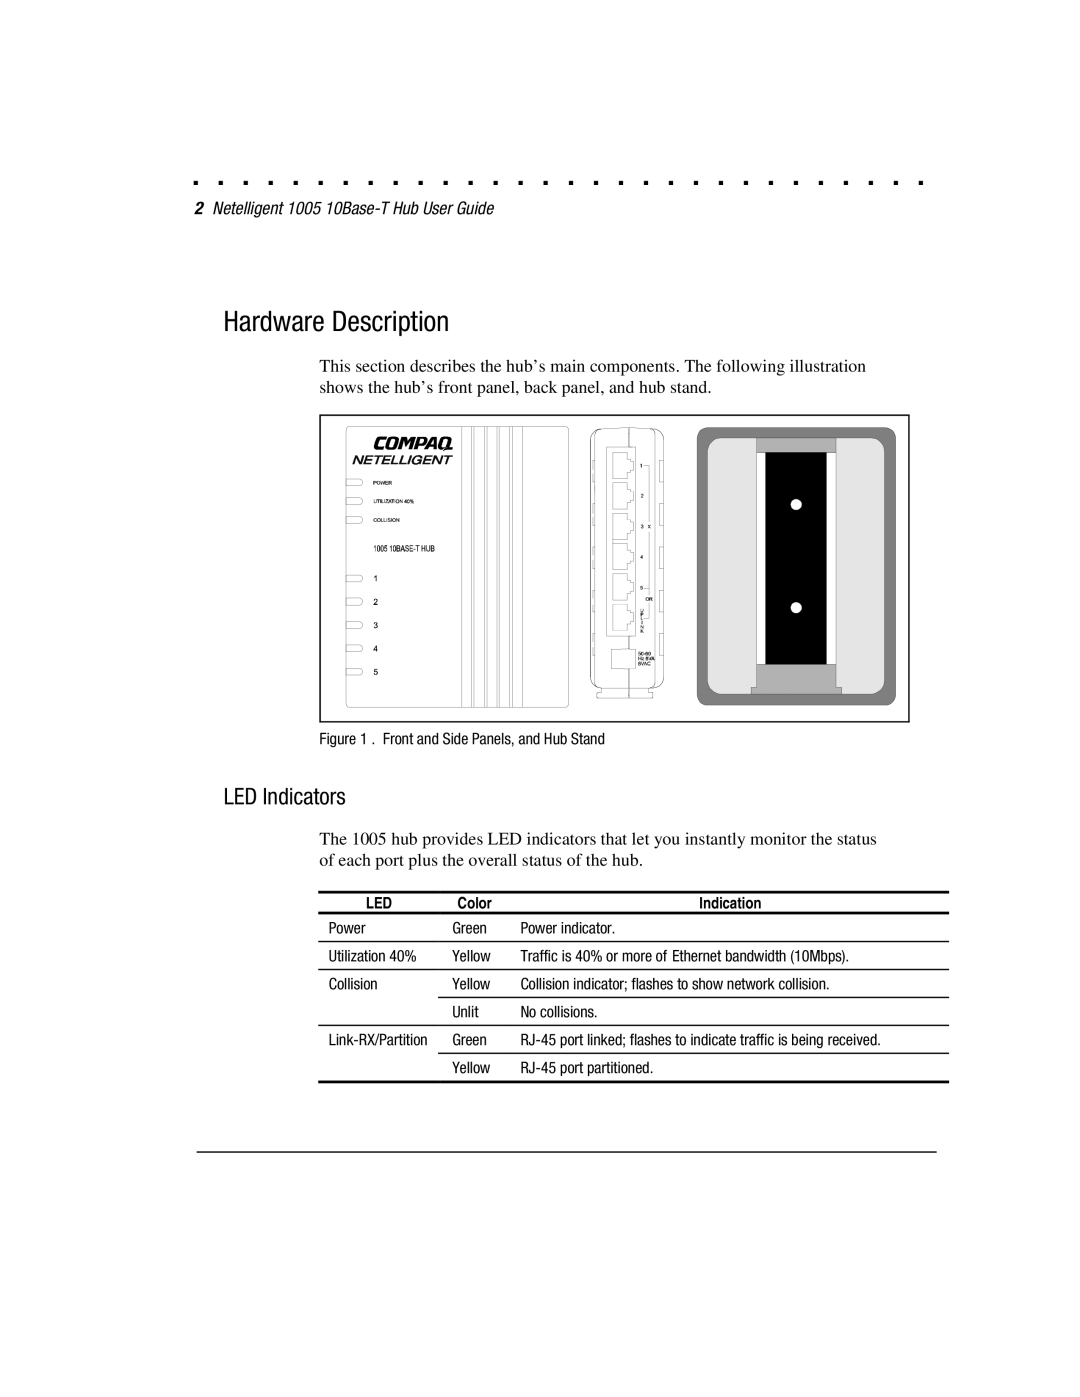 Compaq 1005 manual Hardware Description, LED Indicators 